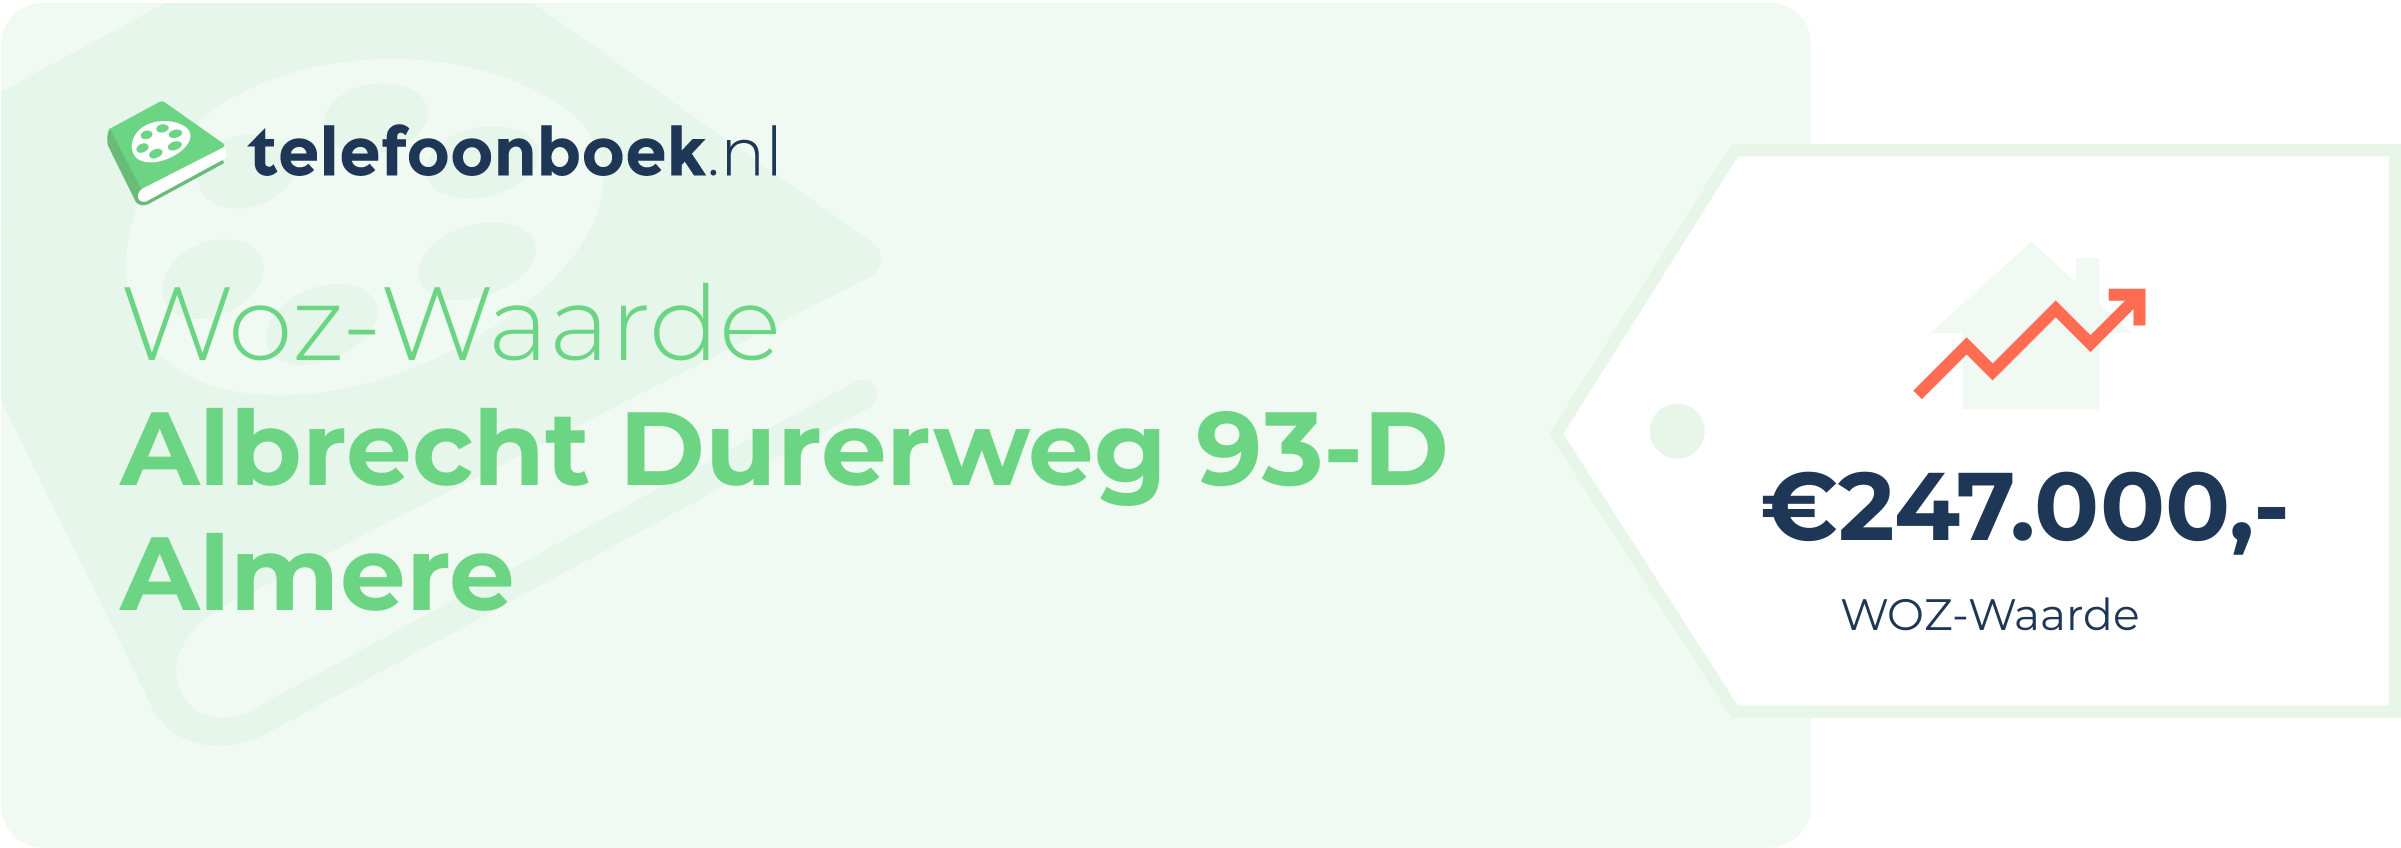 WOZ-waarde Albrecht Durerweg 93-D Almere